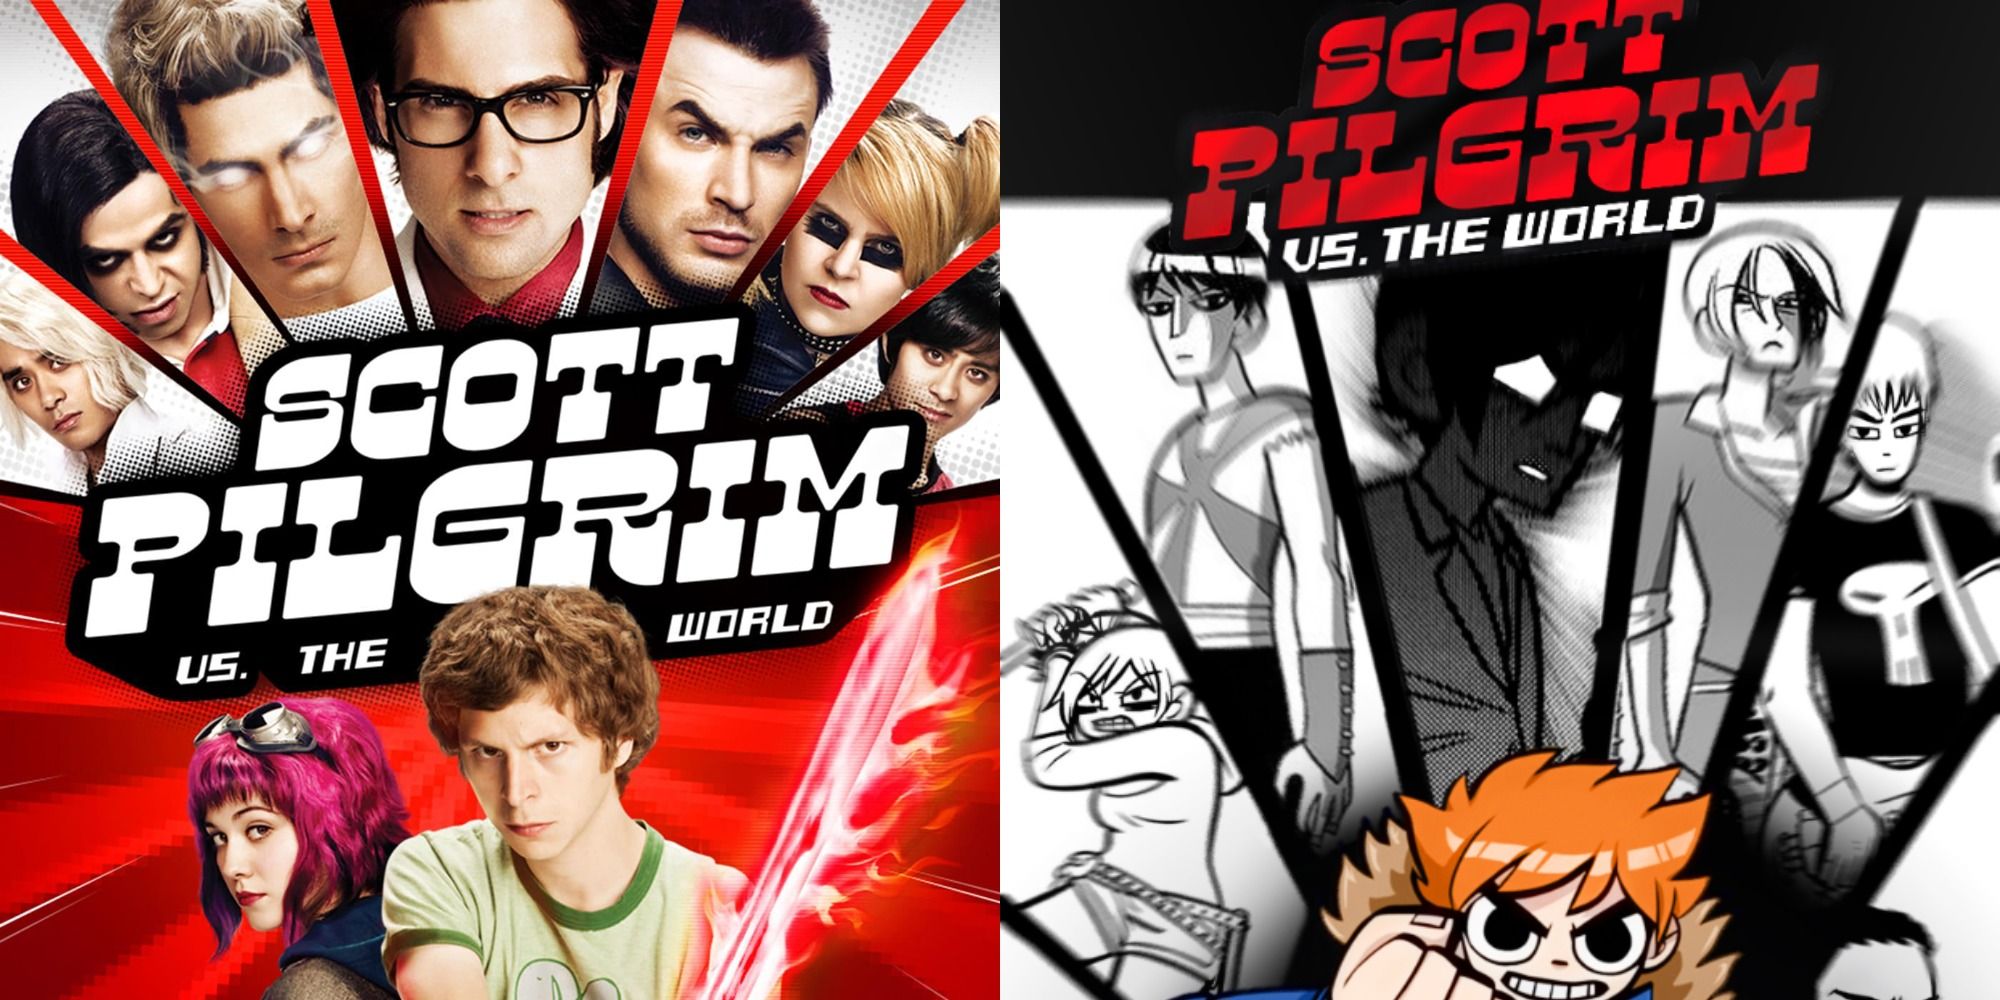 Split image: Movie poster art for Scott Pilgrim Vs. The World, cover art for the comic it is based on